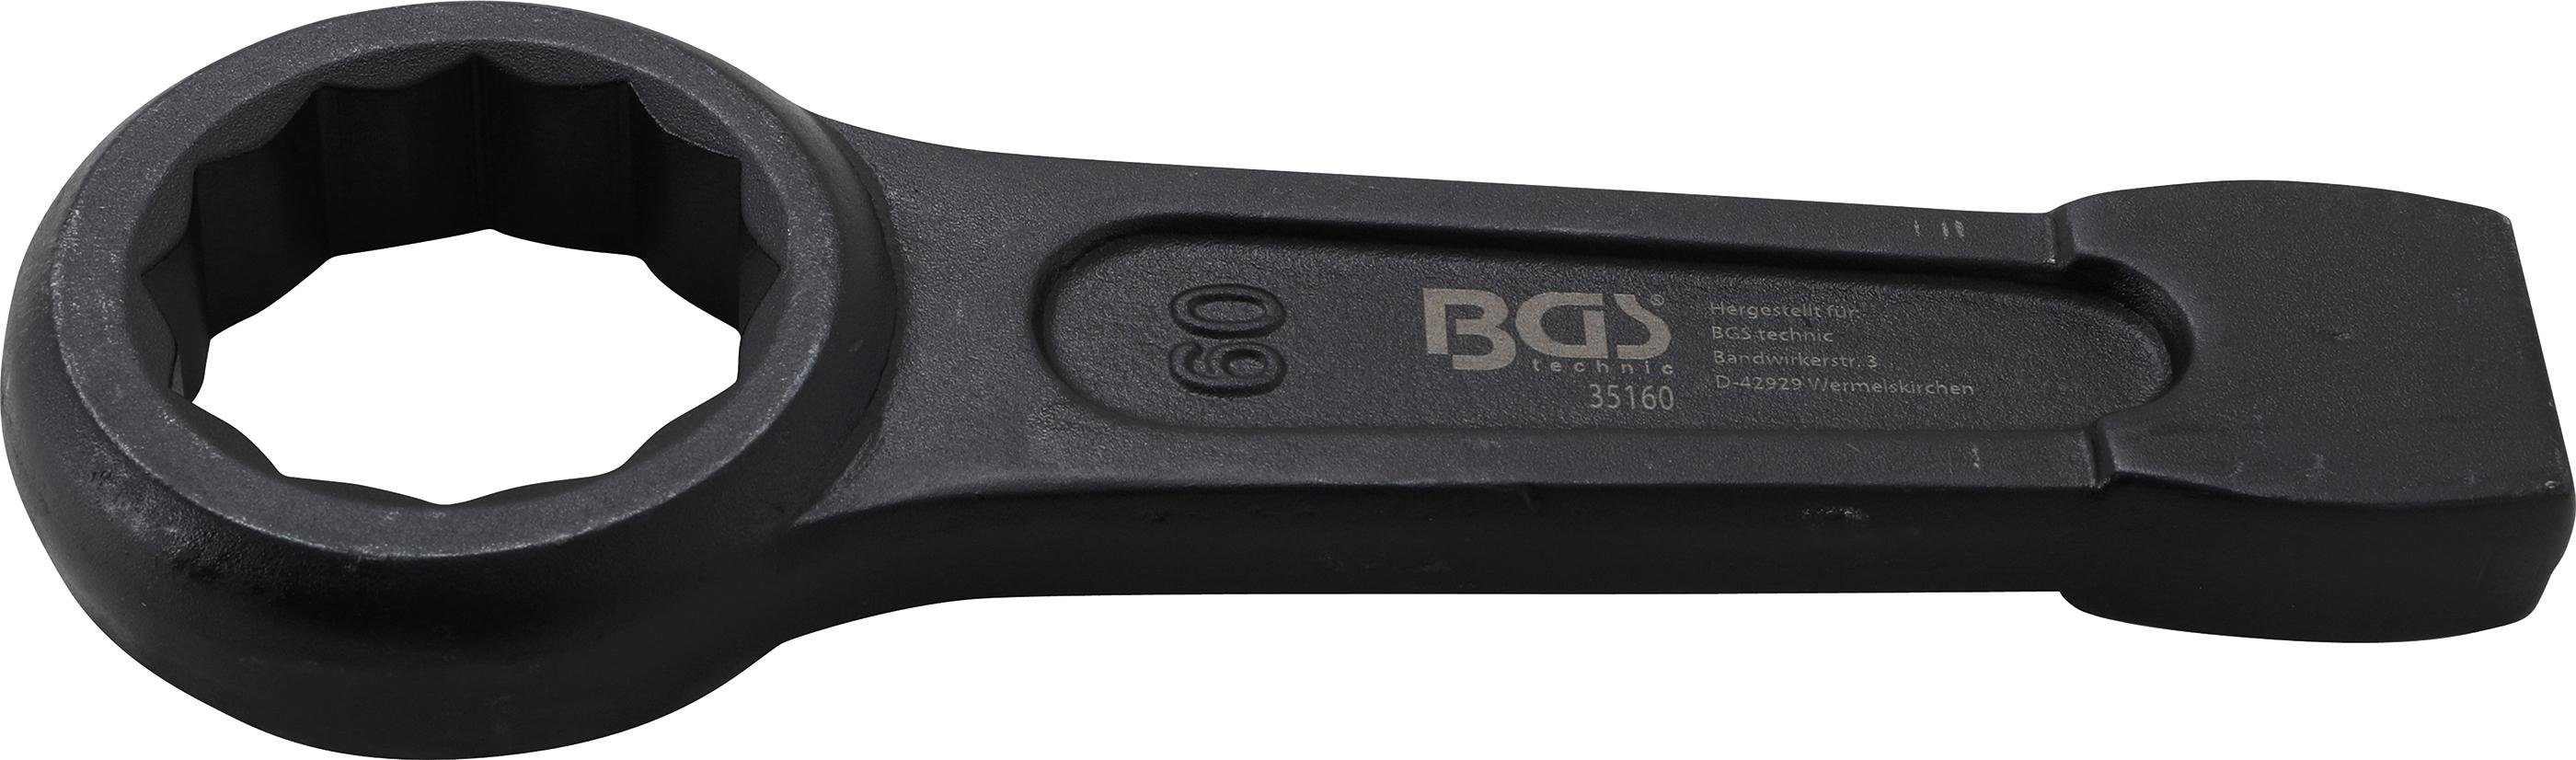 BGS technic Ringschlüssel Schlag-Ringschlüssel, SW 60 mm